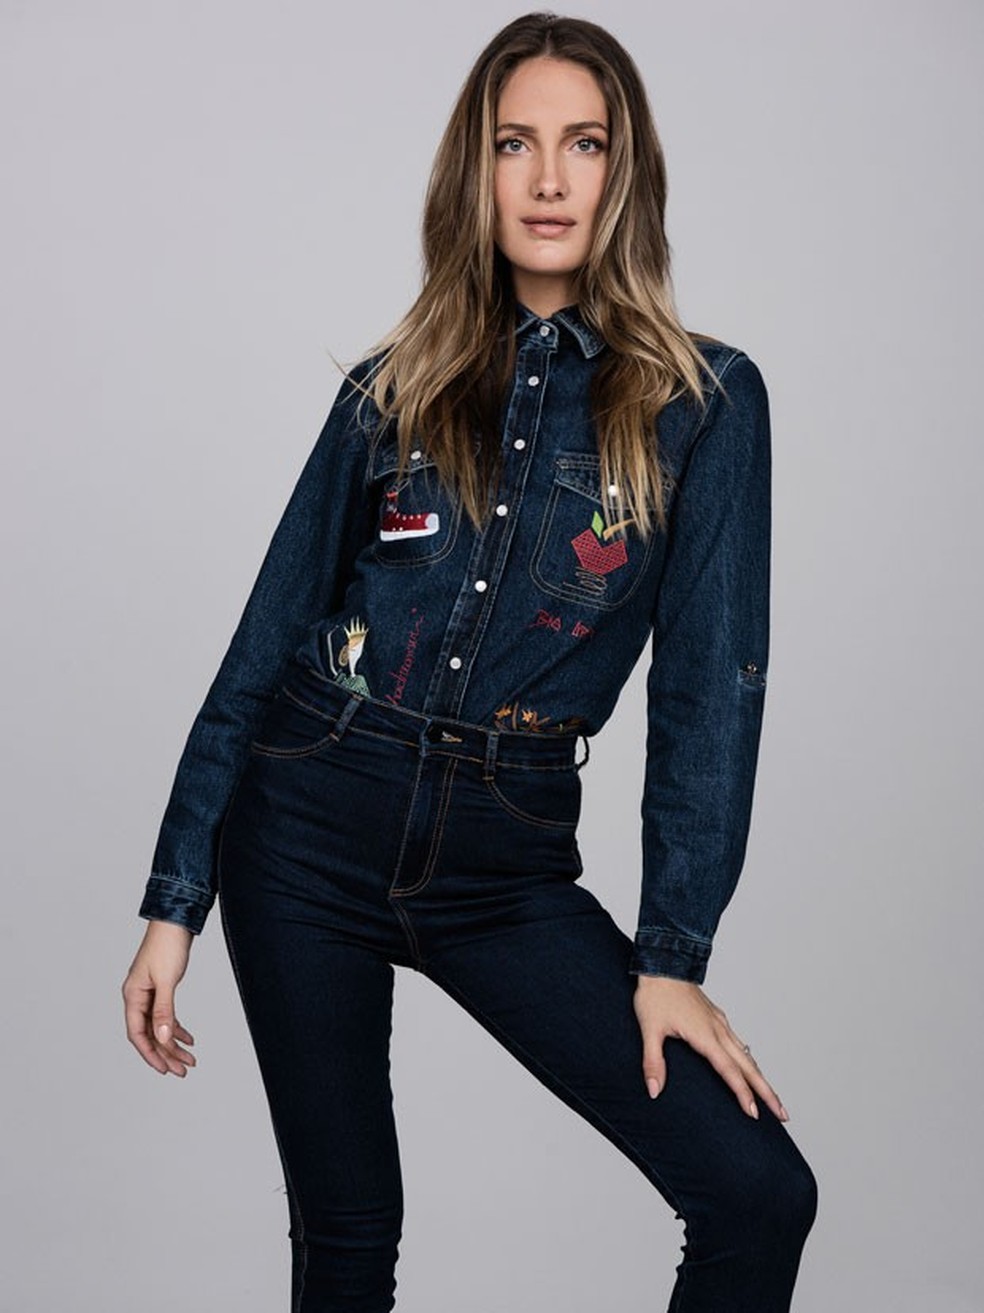 Schynaider lança coleção beneficente de jaquetas (Foto: Nick Suarez) — Foto: Vogue